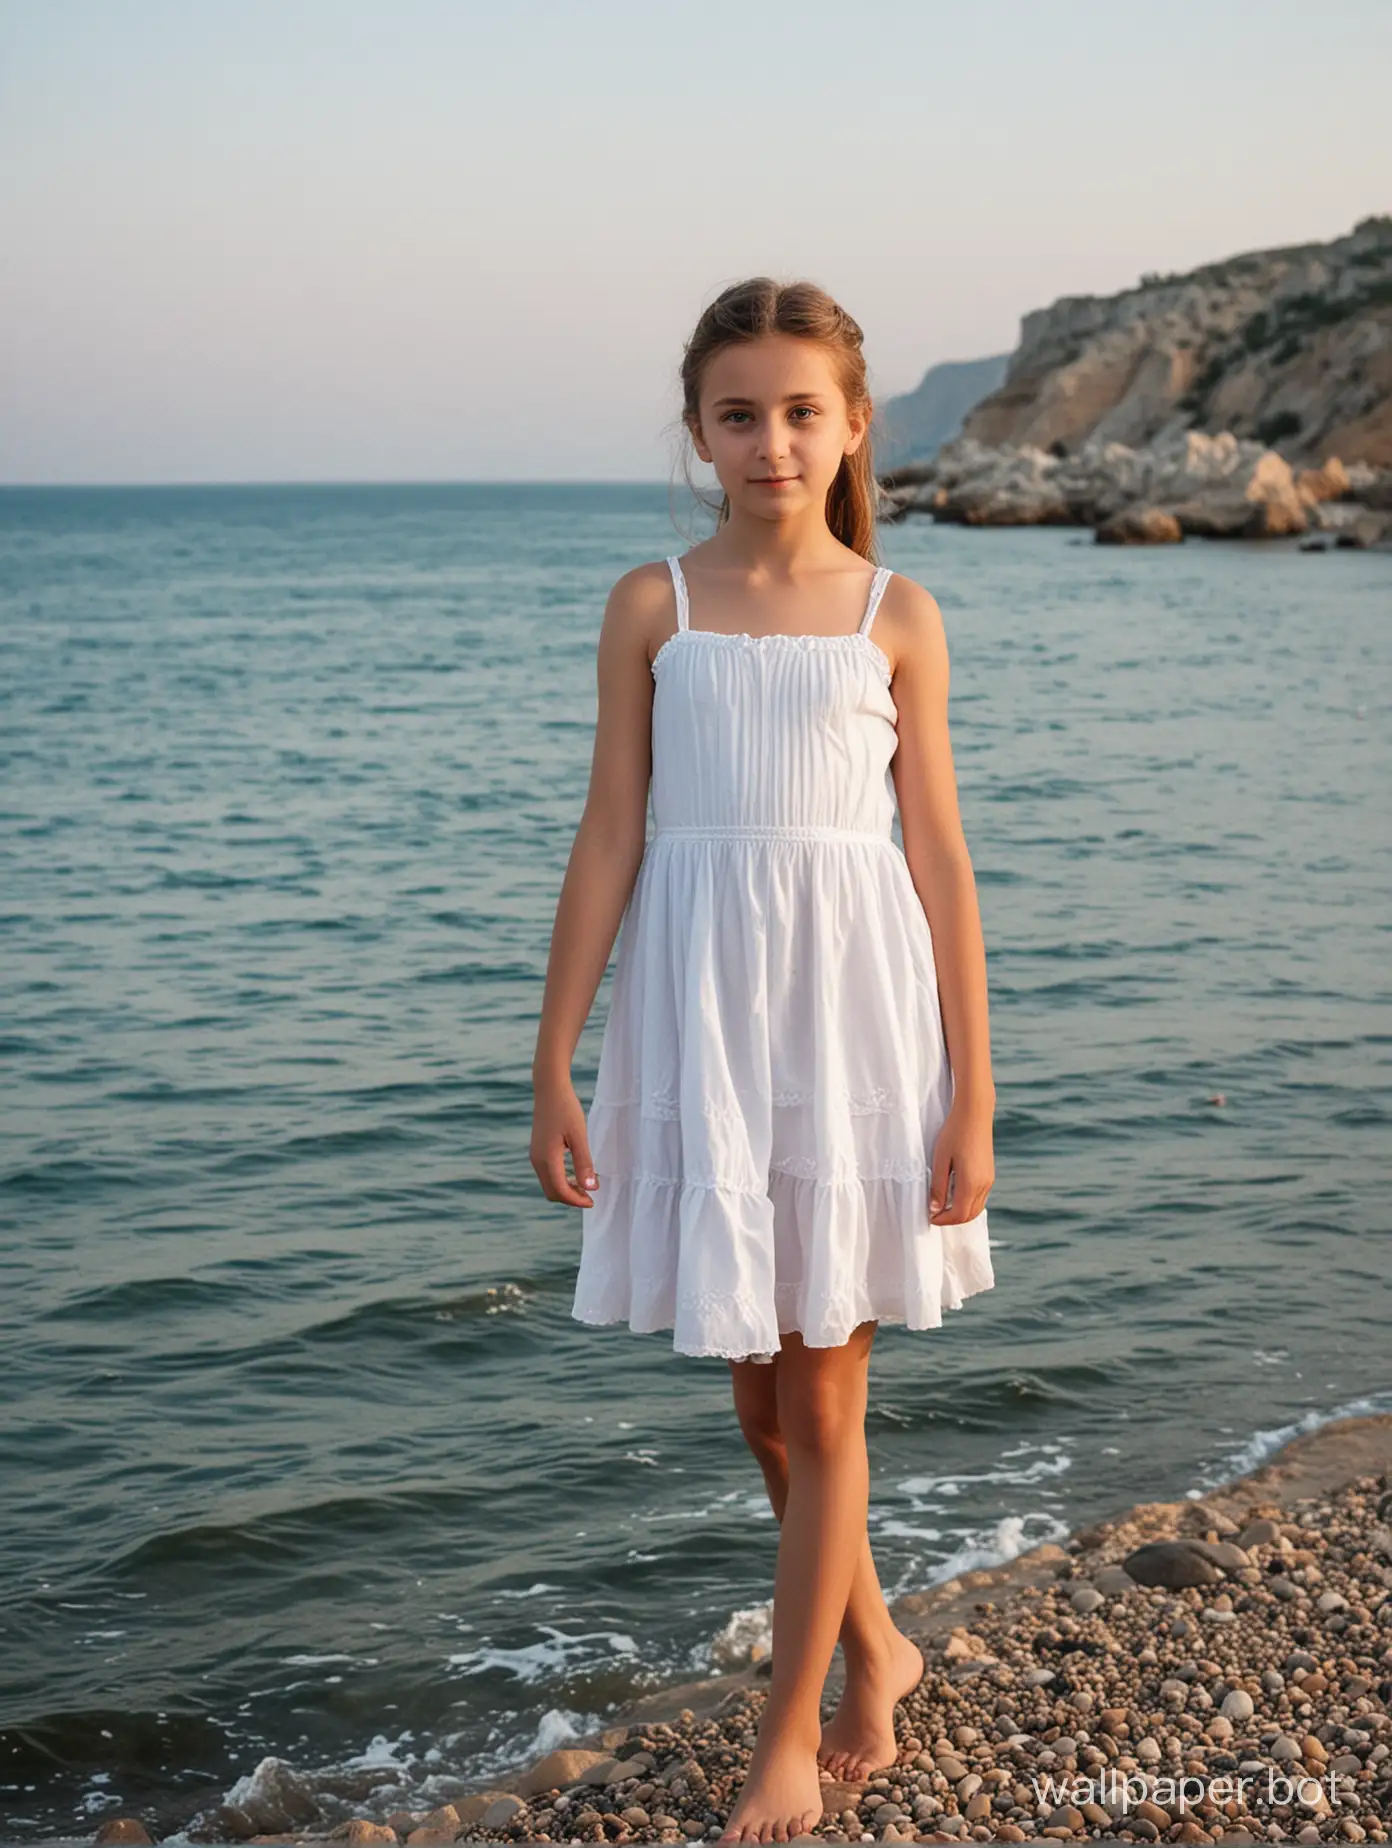 Крым, возле моря, девочка 11 лет в коротком белом платье 